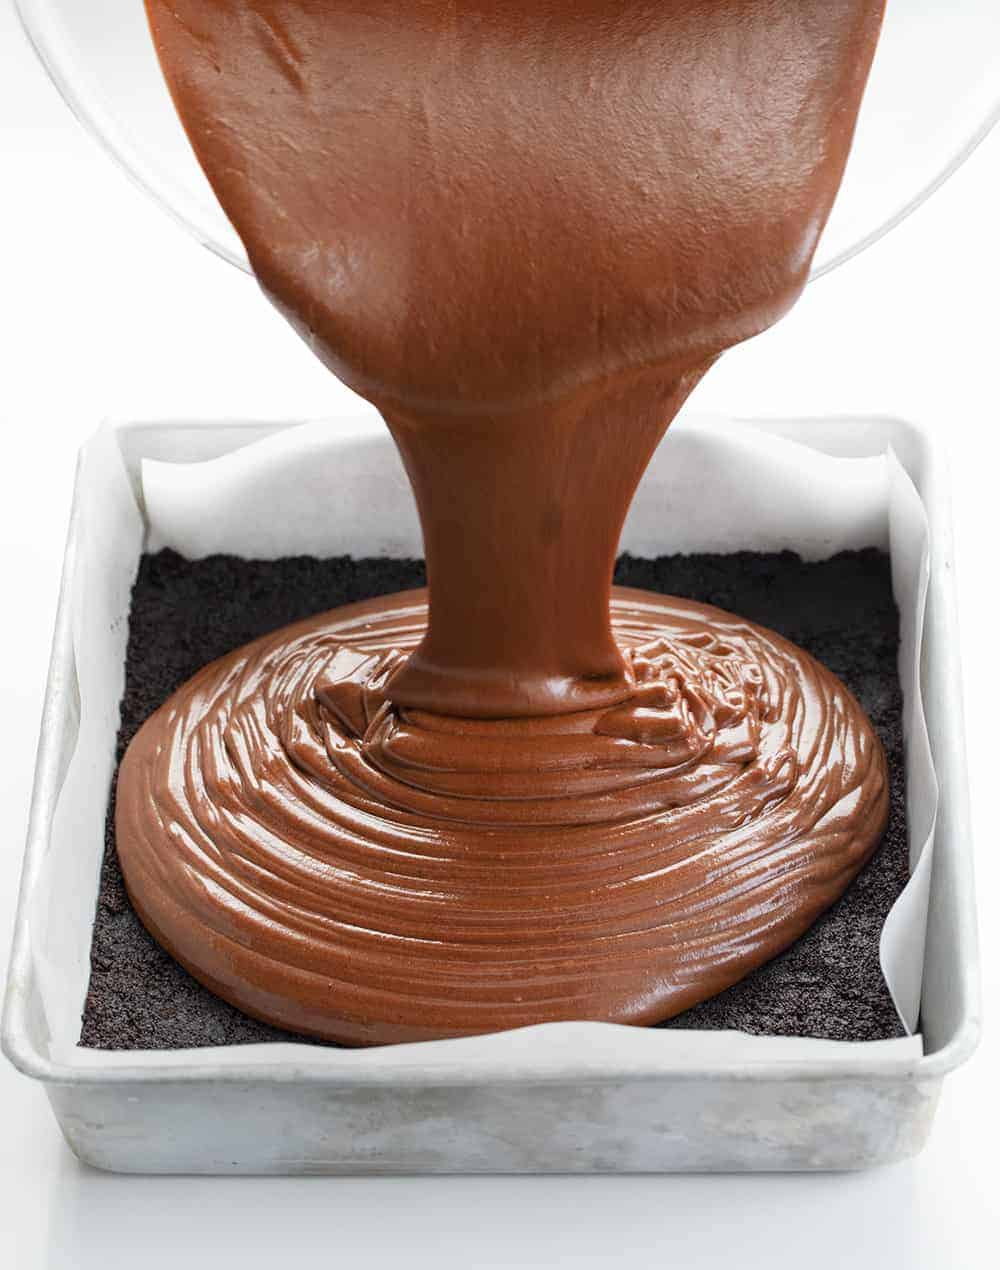 将巧克力芝士蛋糕倒入有奥利奥皮的平底锅中